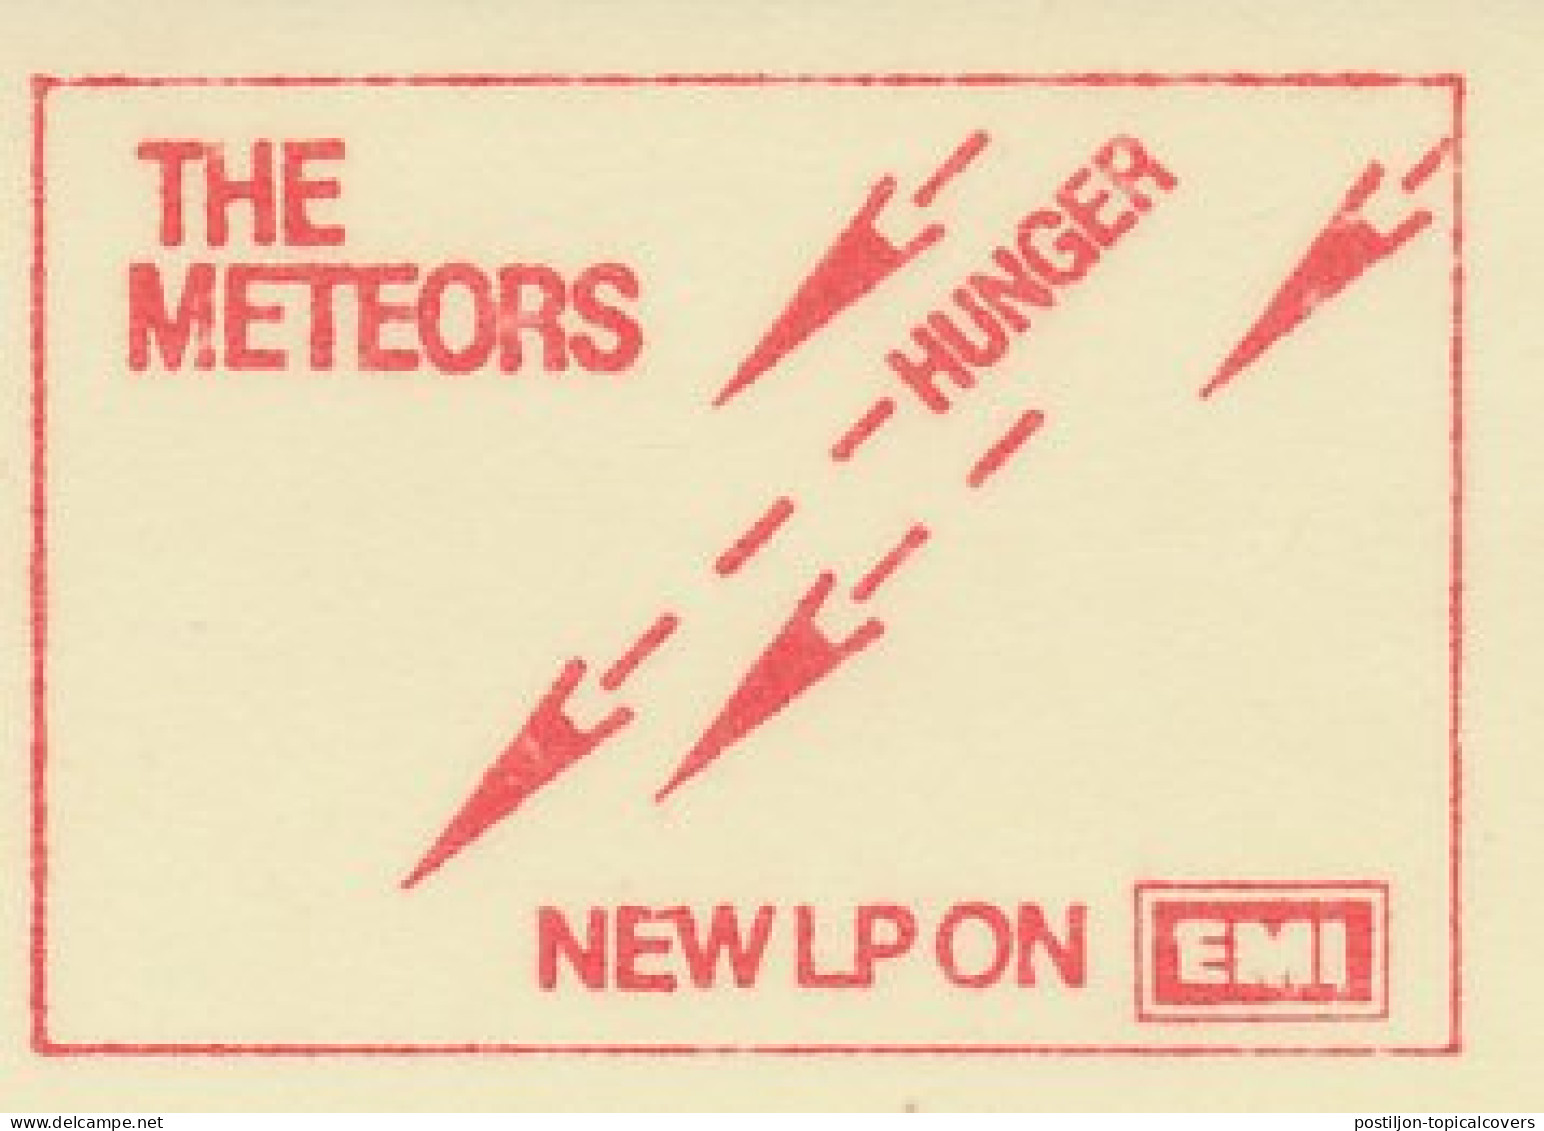 Meter Cut Netherlands 1980 The Meteors - Dutch Rockband - New LP Hunger - Musique